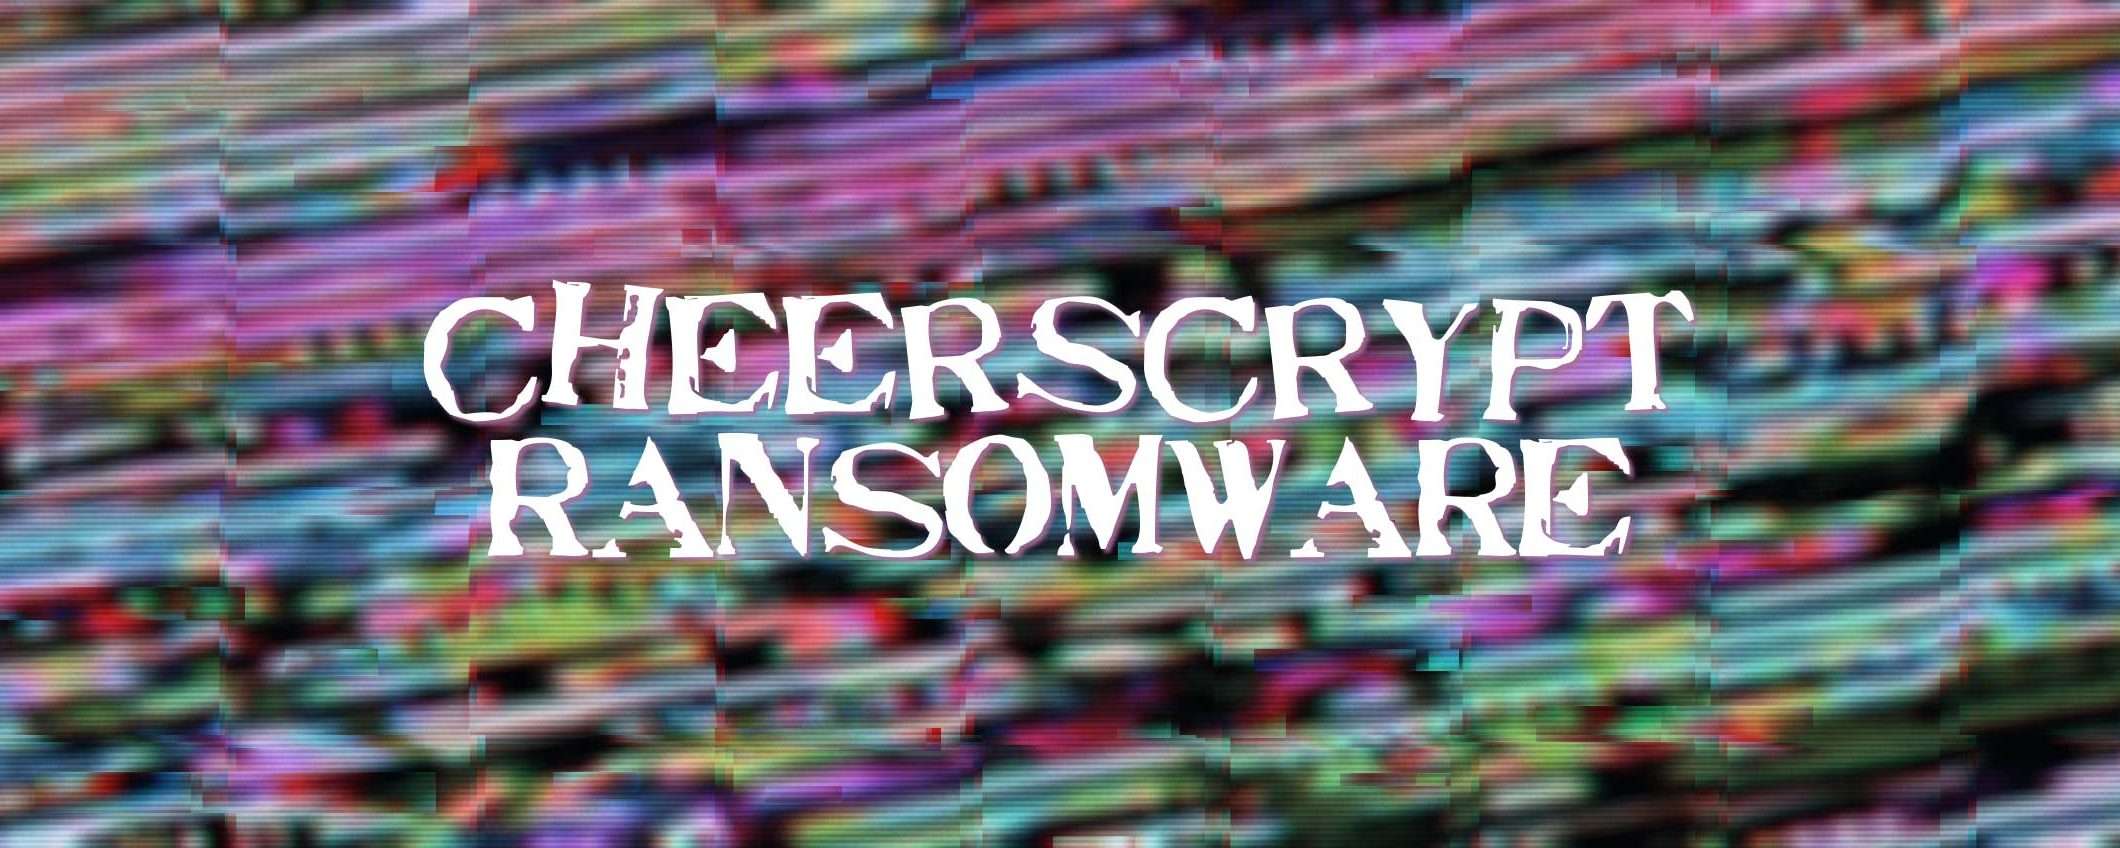 Il ransomware Cheerscrypt prende di mira Linux